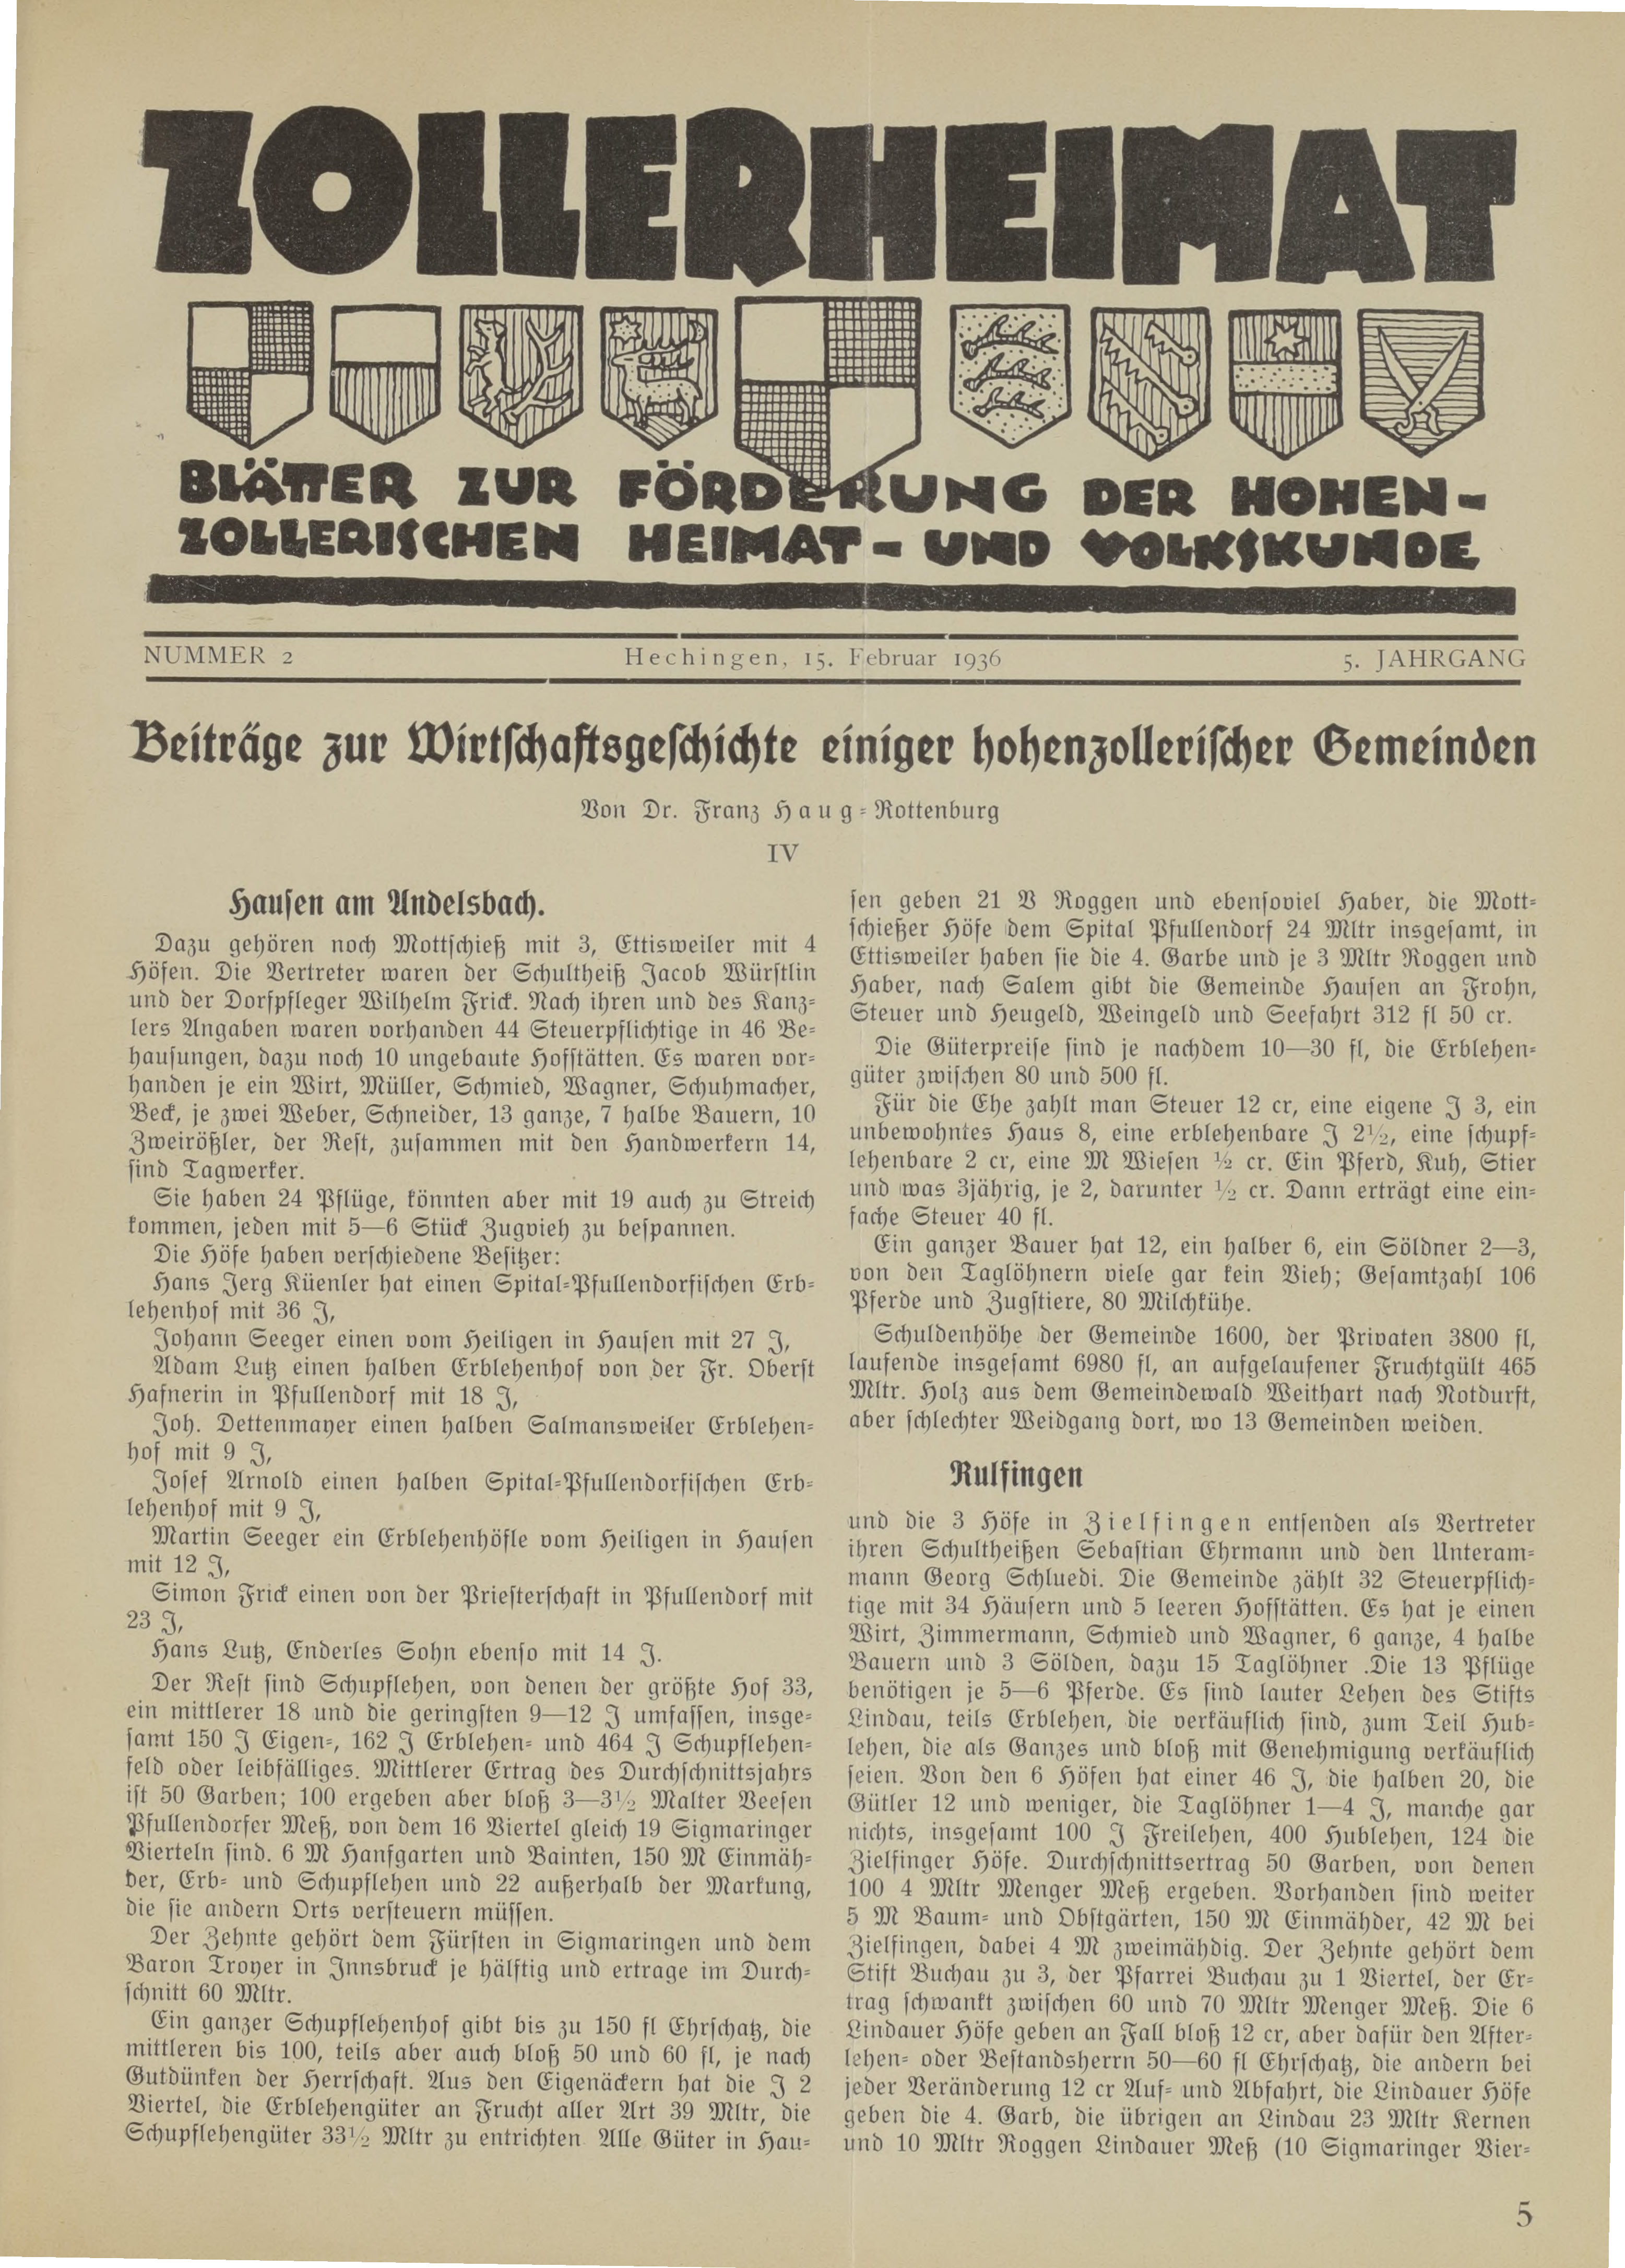                     Ansehen Bd. 5 Nr. 2 (1936): Zollerheimat
                